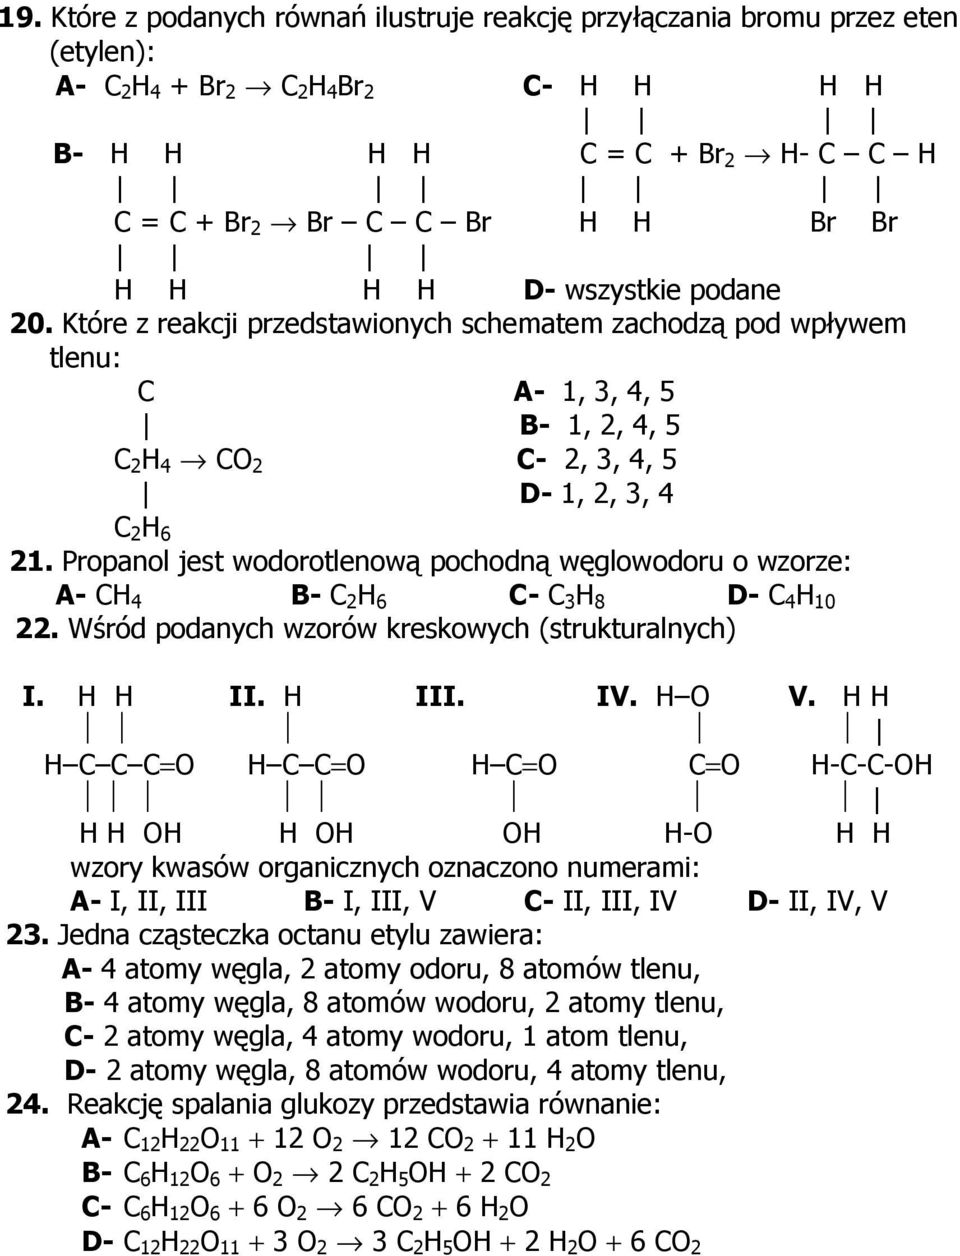 Propanol jest wodorotlenową pochodną węglowodoru o wzorze: A- CH 4 B- C 2 H 6 C- C 3 H 8 D- C 4 H 10 22. Wśród podanych wzorów kreskowych (strukturalnych) I. H H II. H III. IV. H O V.